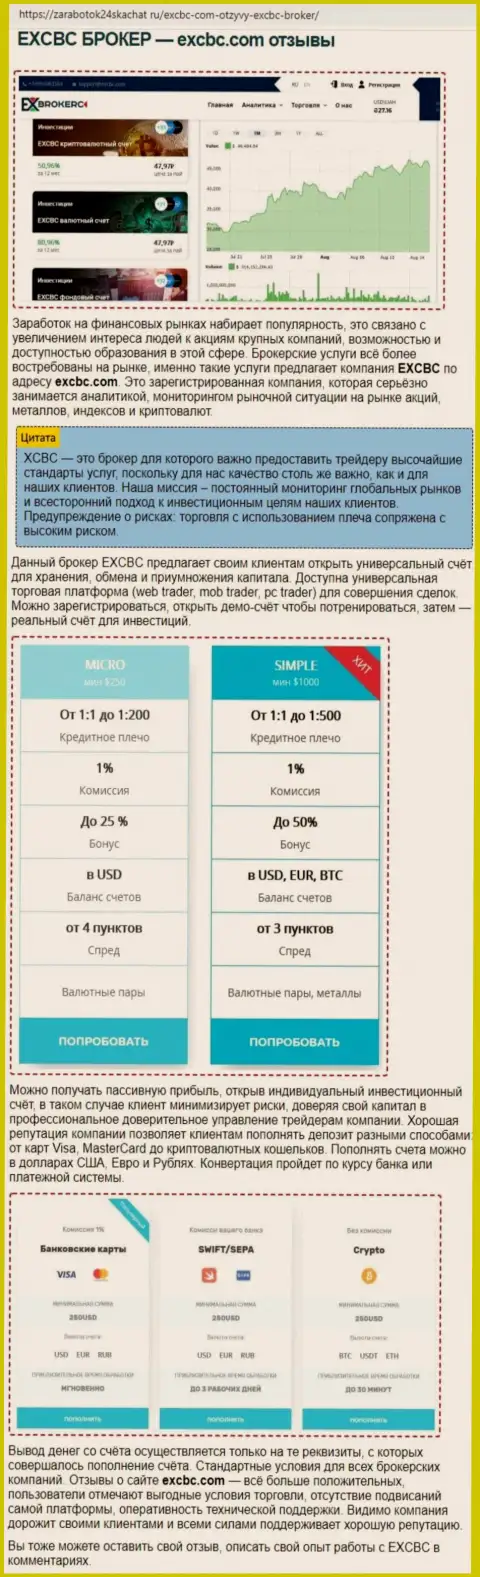 Сведения об ФОРЕКС брокерской компании EXCBC в обзорной публикации на сайте Zarabotok24Skachat Ru